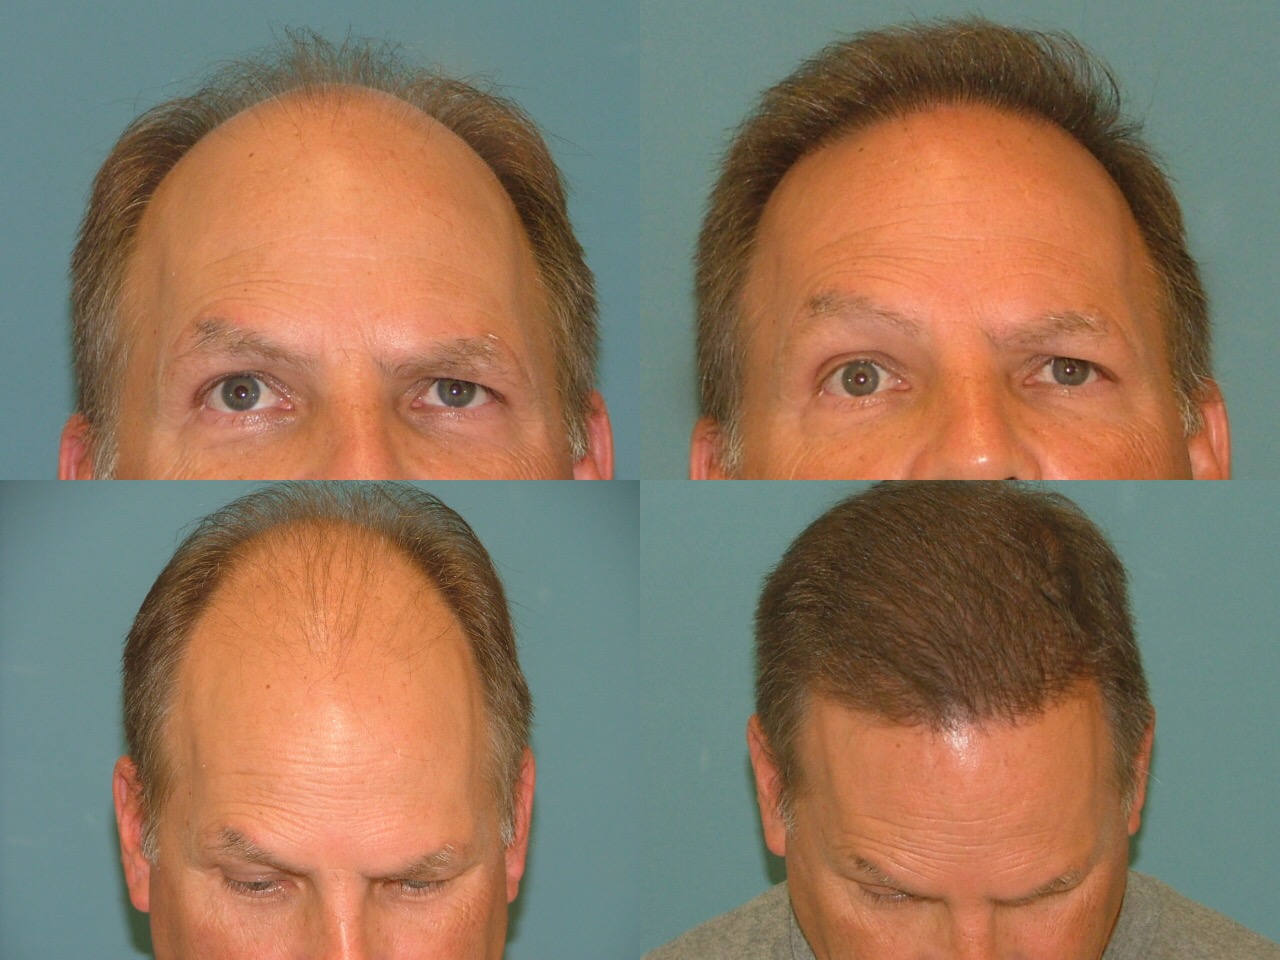 Estetigraft hair restoration